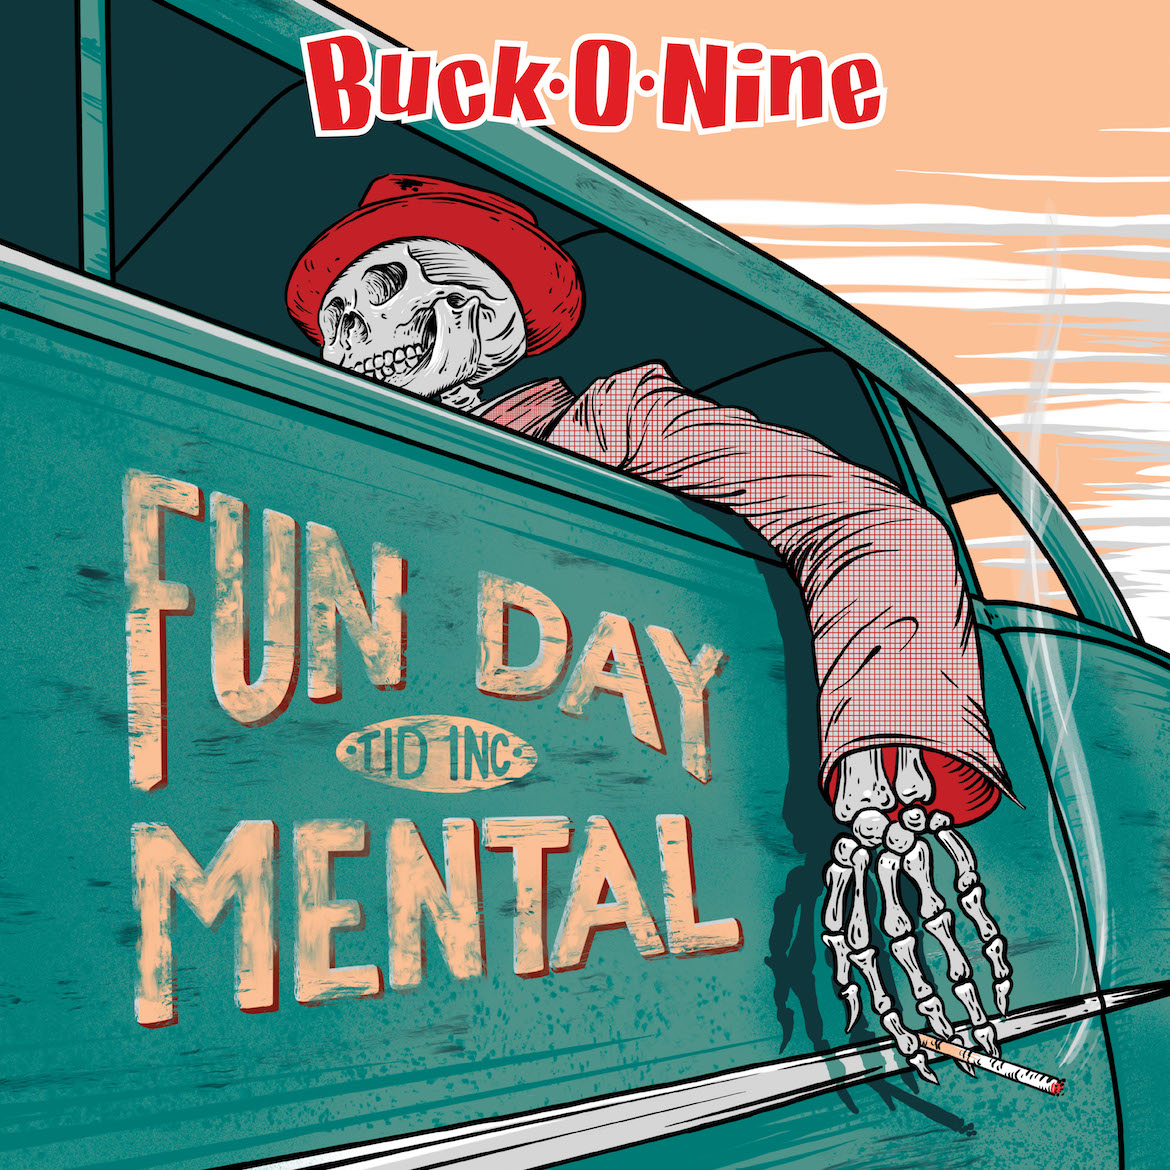 Buck-O-Nine and Fundaymental on Selective Memory